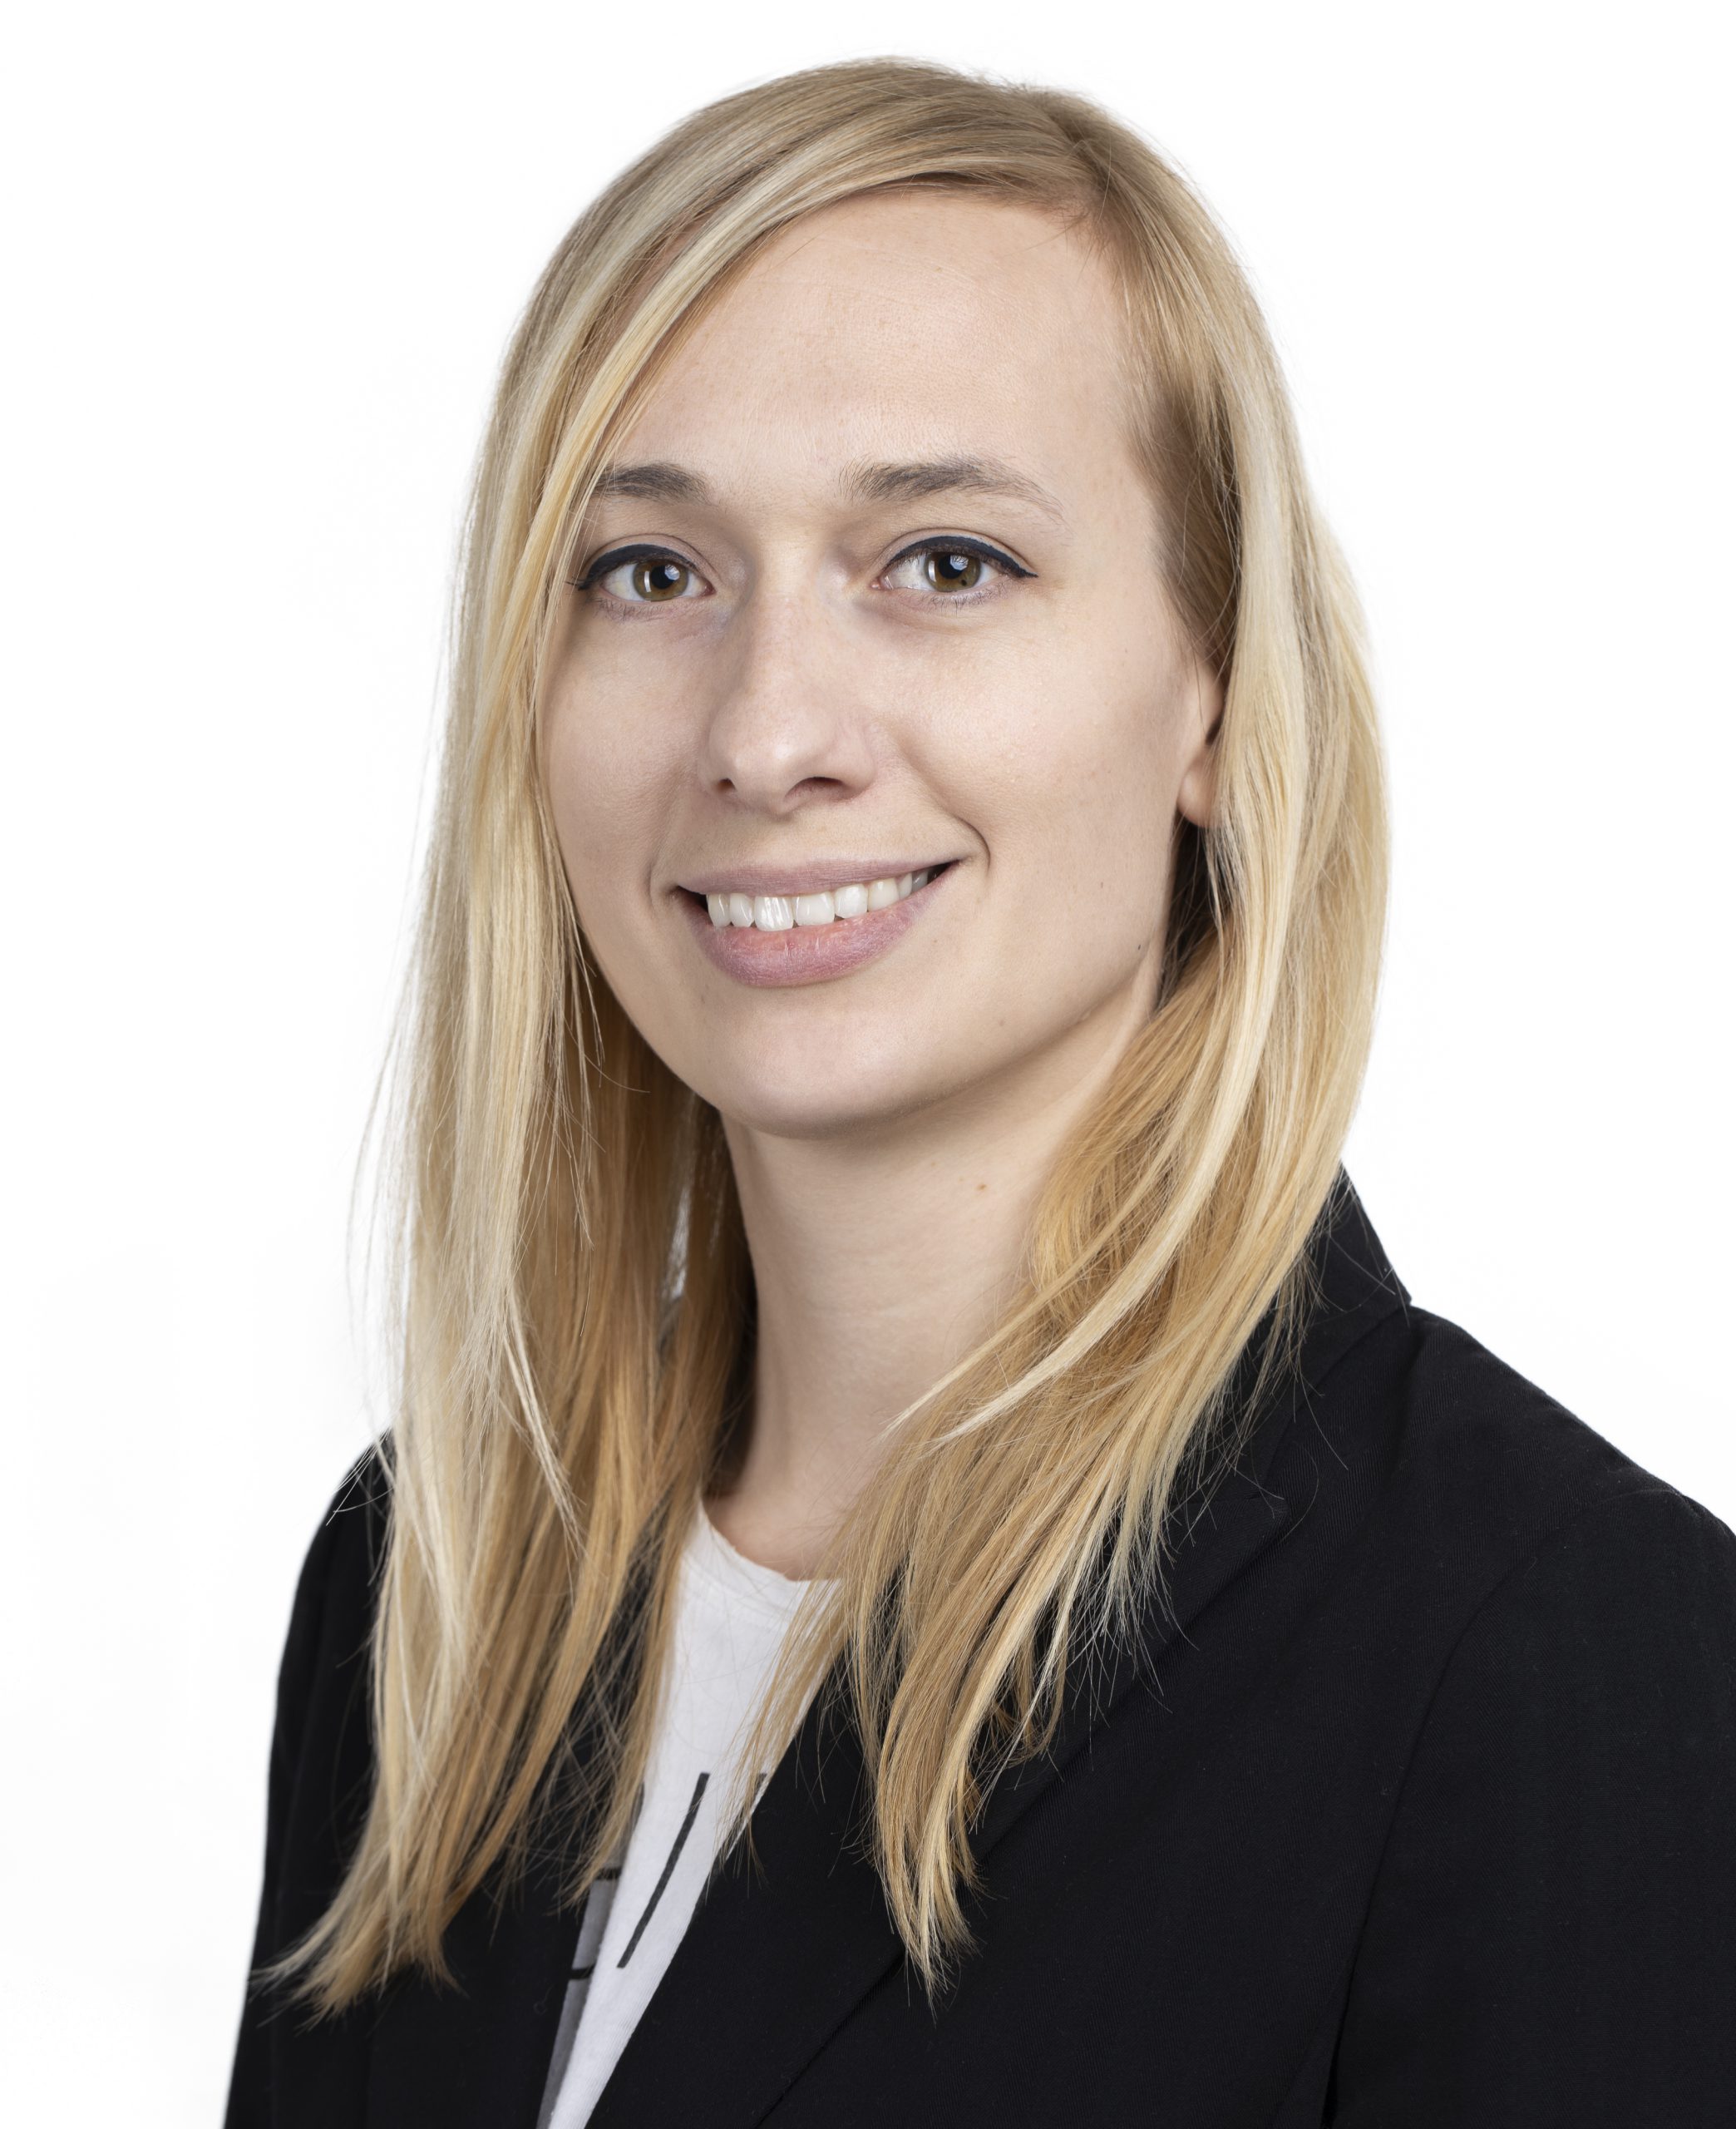 Veronika Zupa übernimmt neu geschaffene Position als Sustainability Managerin bei CMS